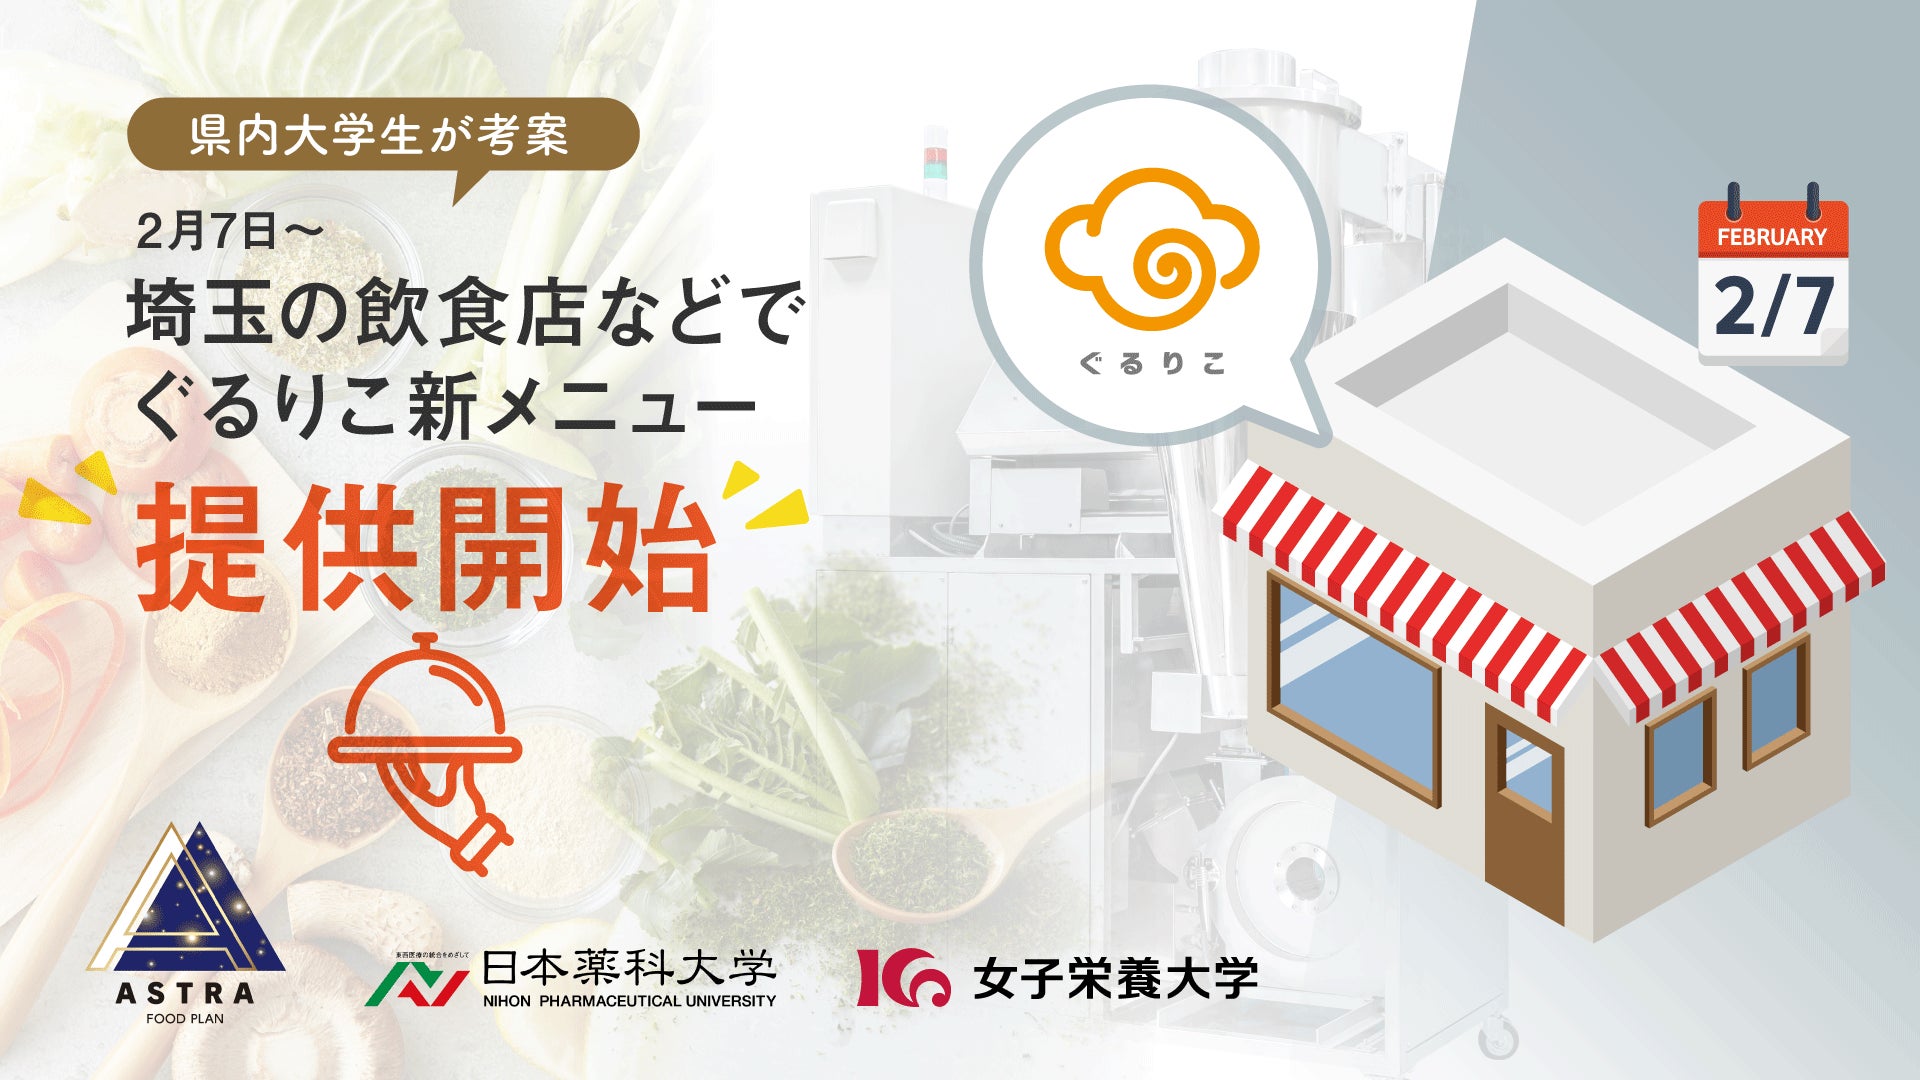 2/8 横浜市の産業用ヒーターメーカー、スリーハイが札幌営業所を設立